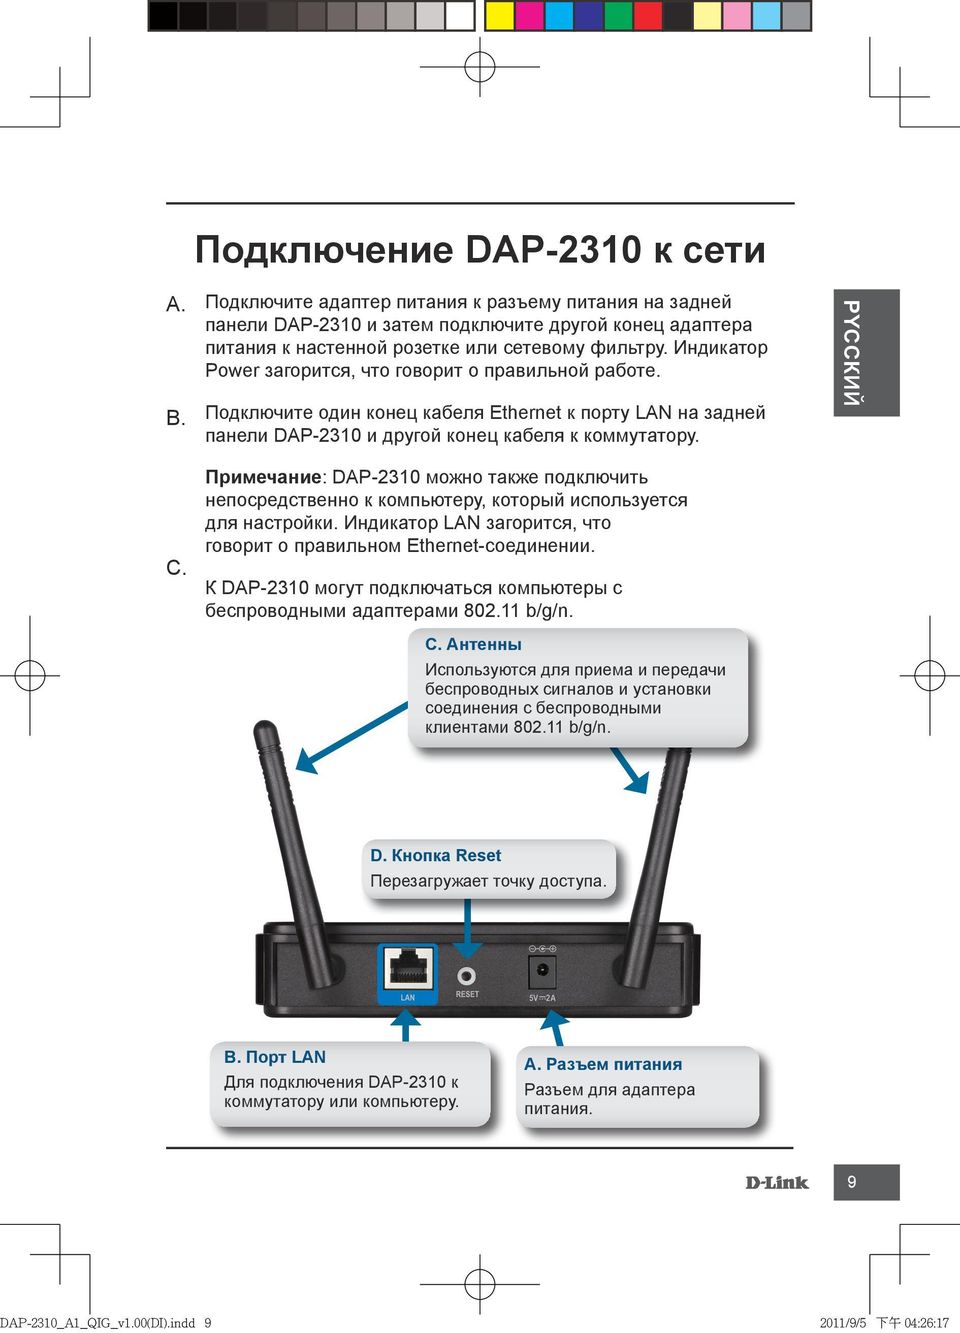 Примечание: DAP-2310 можно также подключить непосредственно к компьютеру, который используется для настройки. Индикатор LAN загорится, что говорит о правильном Ethernet-соединении.